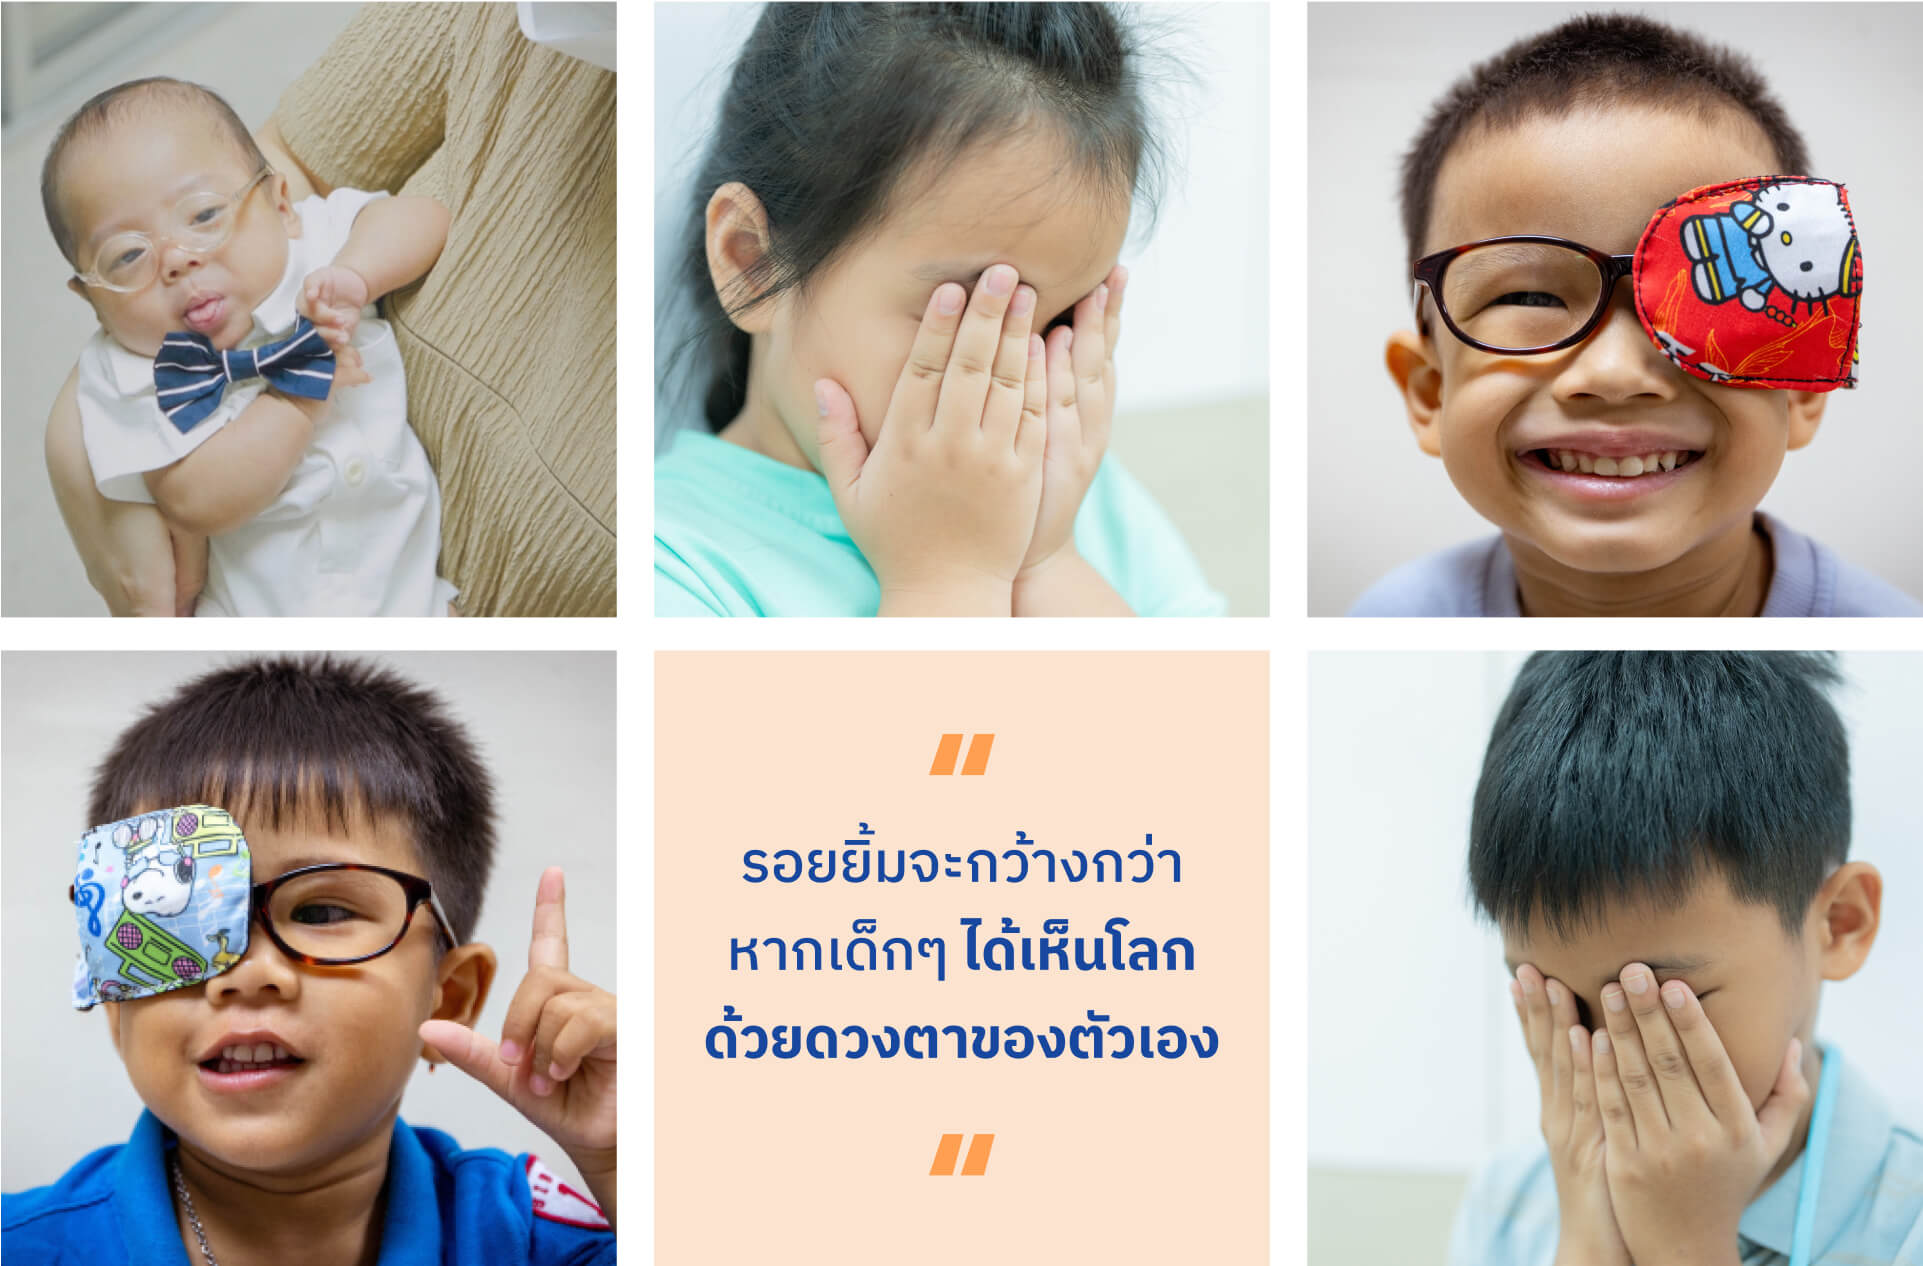 มูลนิธิโรงพยาบาลเด็ก กองทุนอาคารเฉลิมพระเกียรติฯ โครงการช่วยน้อง ให้มองเห็น
                        ลดอัตราการตาบอดในเด็กไทย